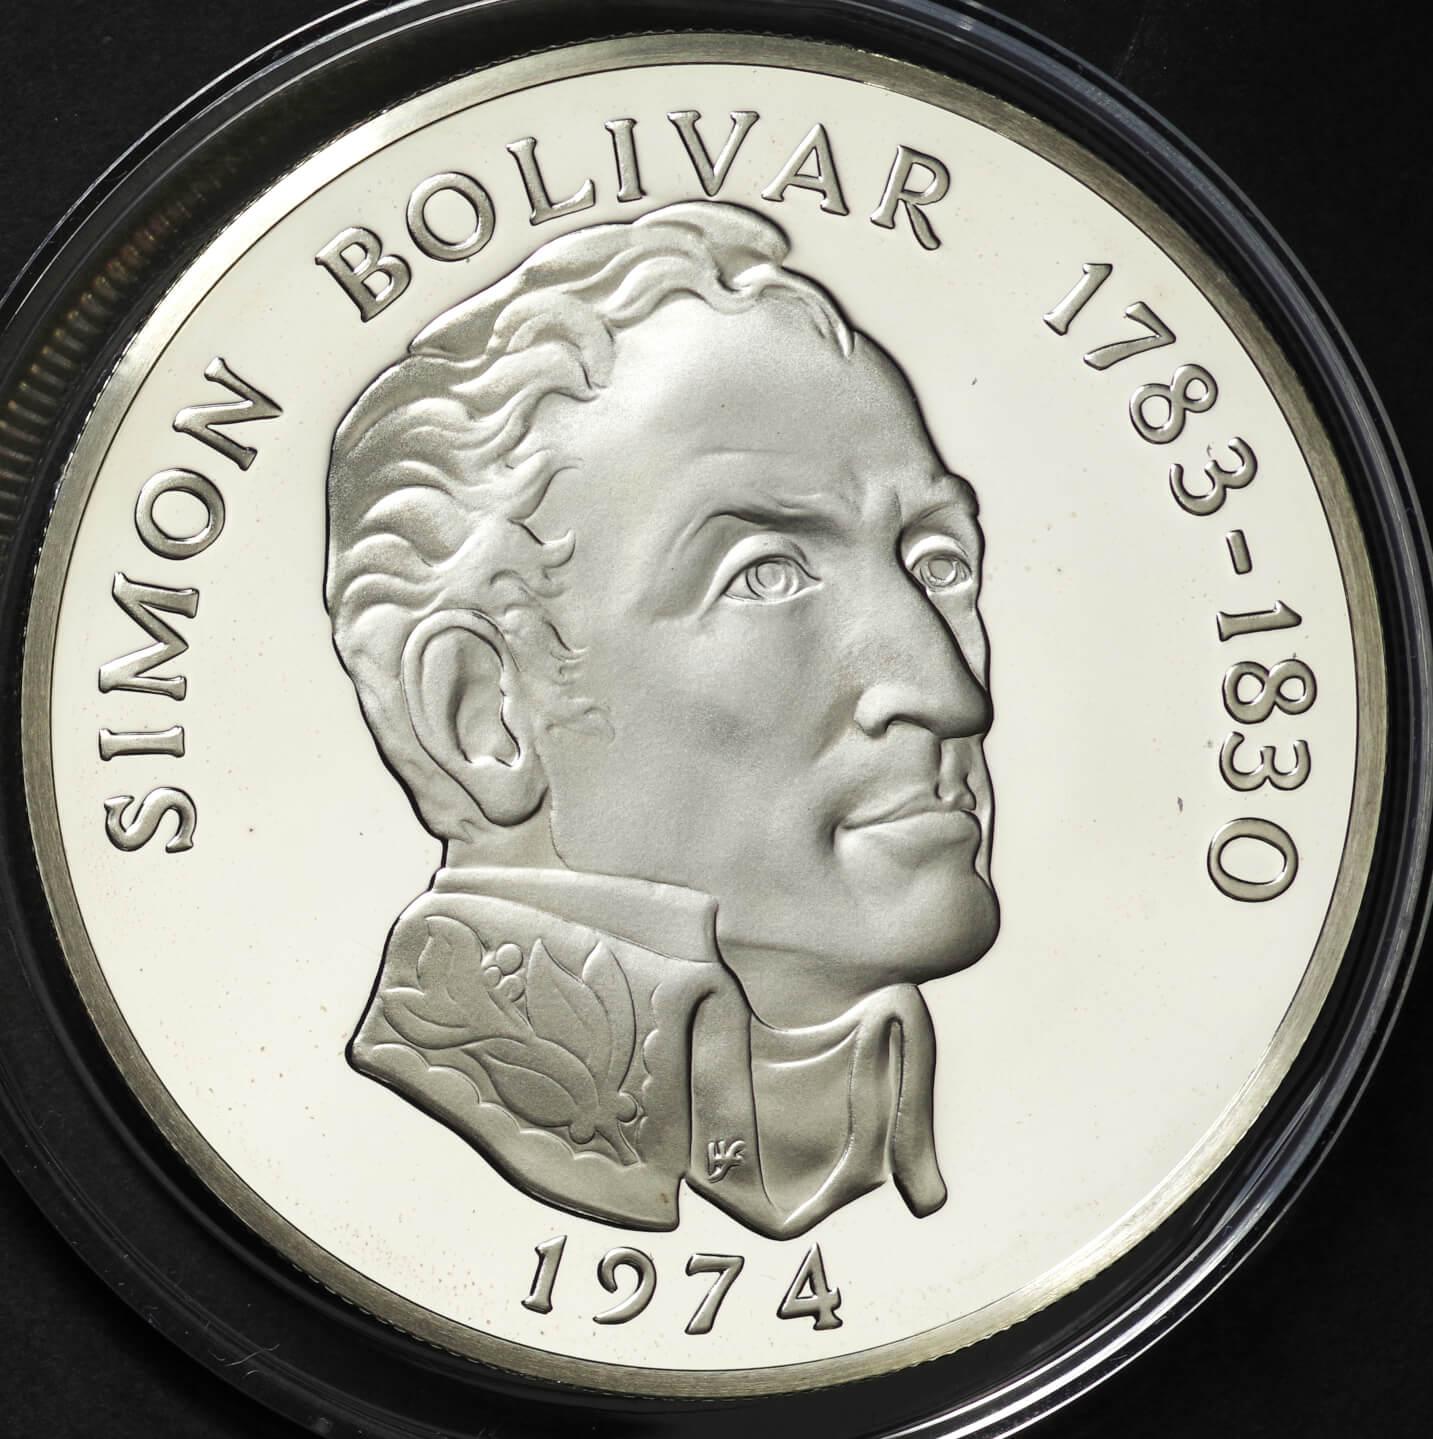 パナマ共和国 20バルボア銀貨 1973年 - コレクション